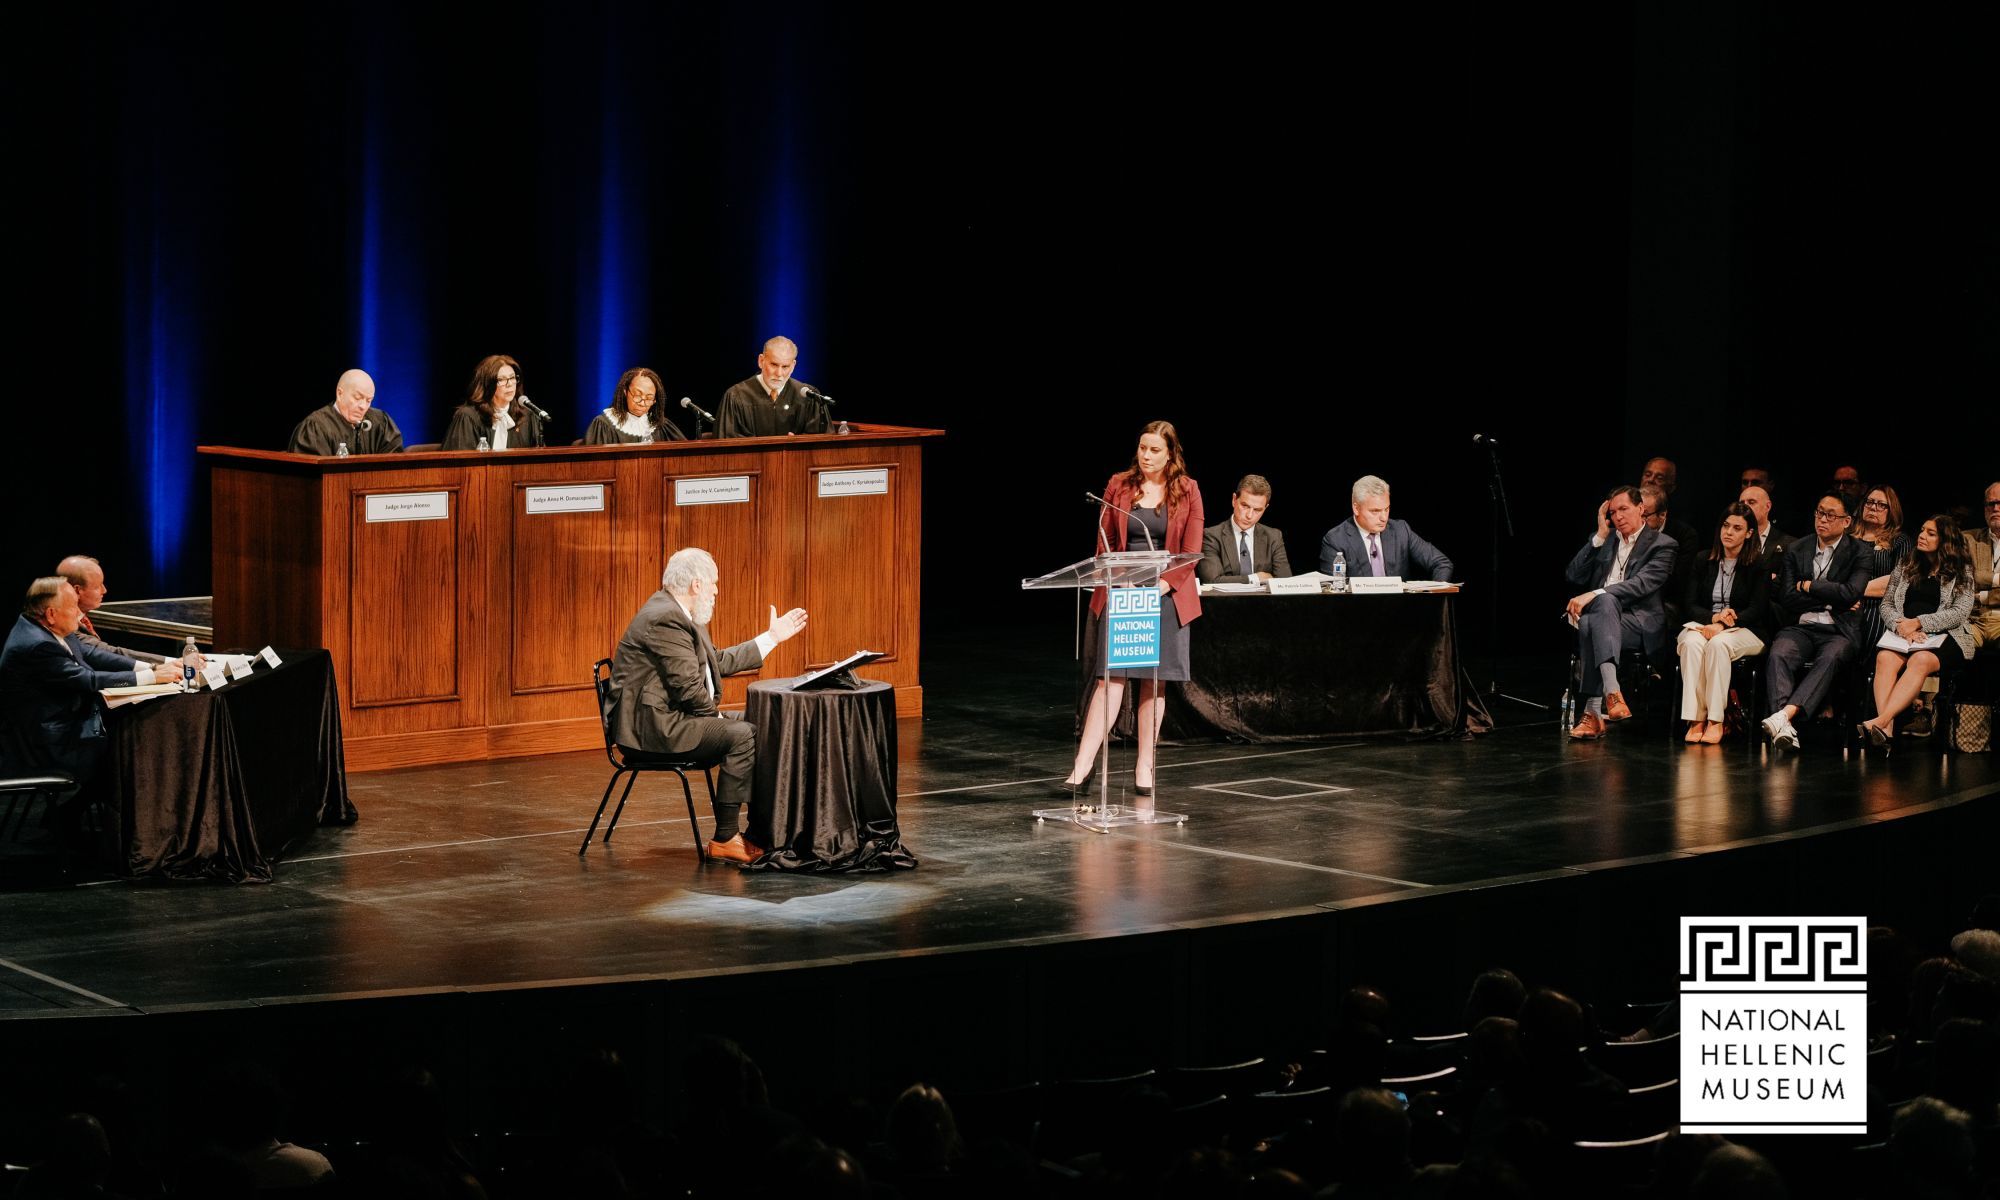 On a stage, a courtroom like setup takes place. 